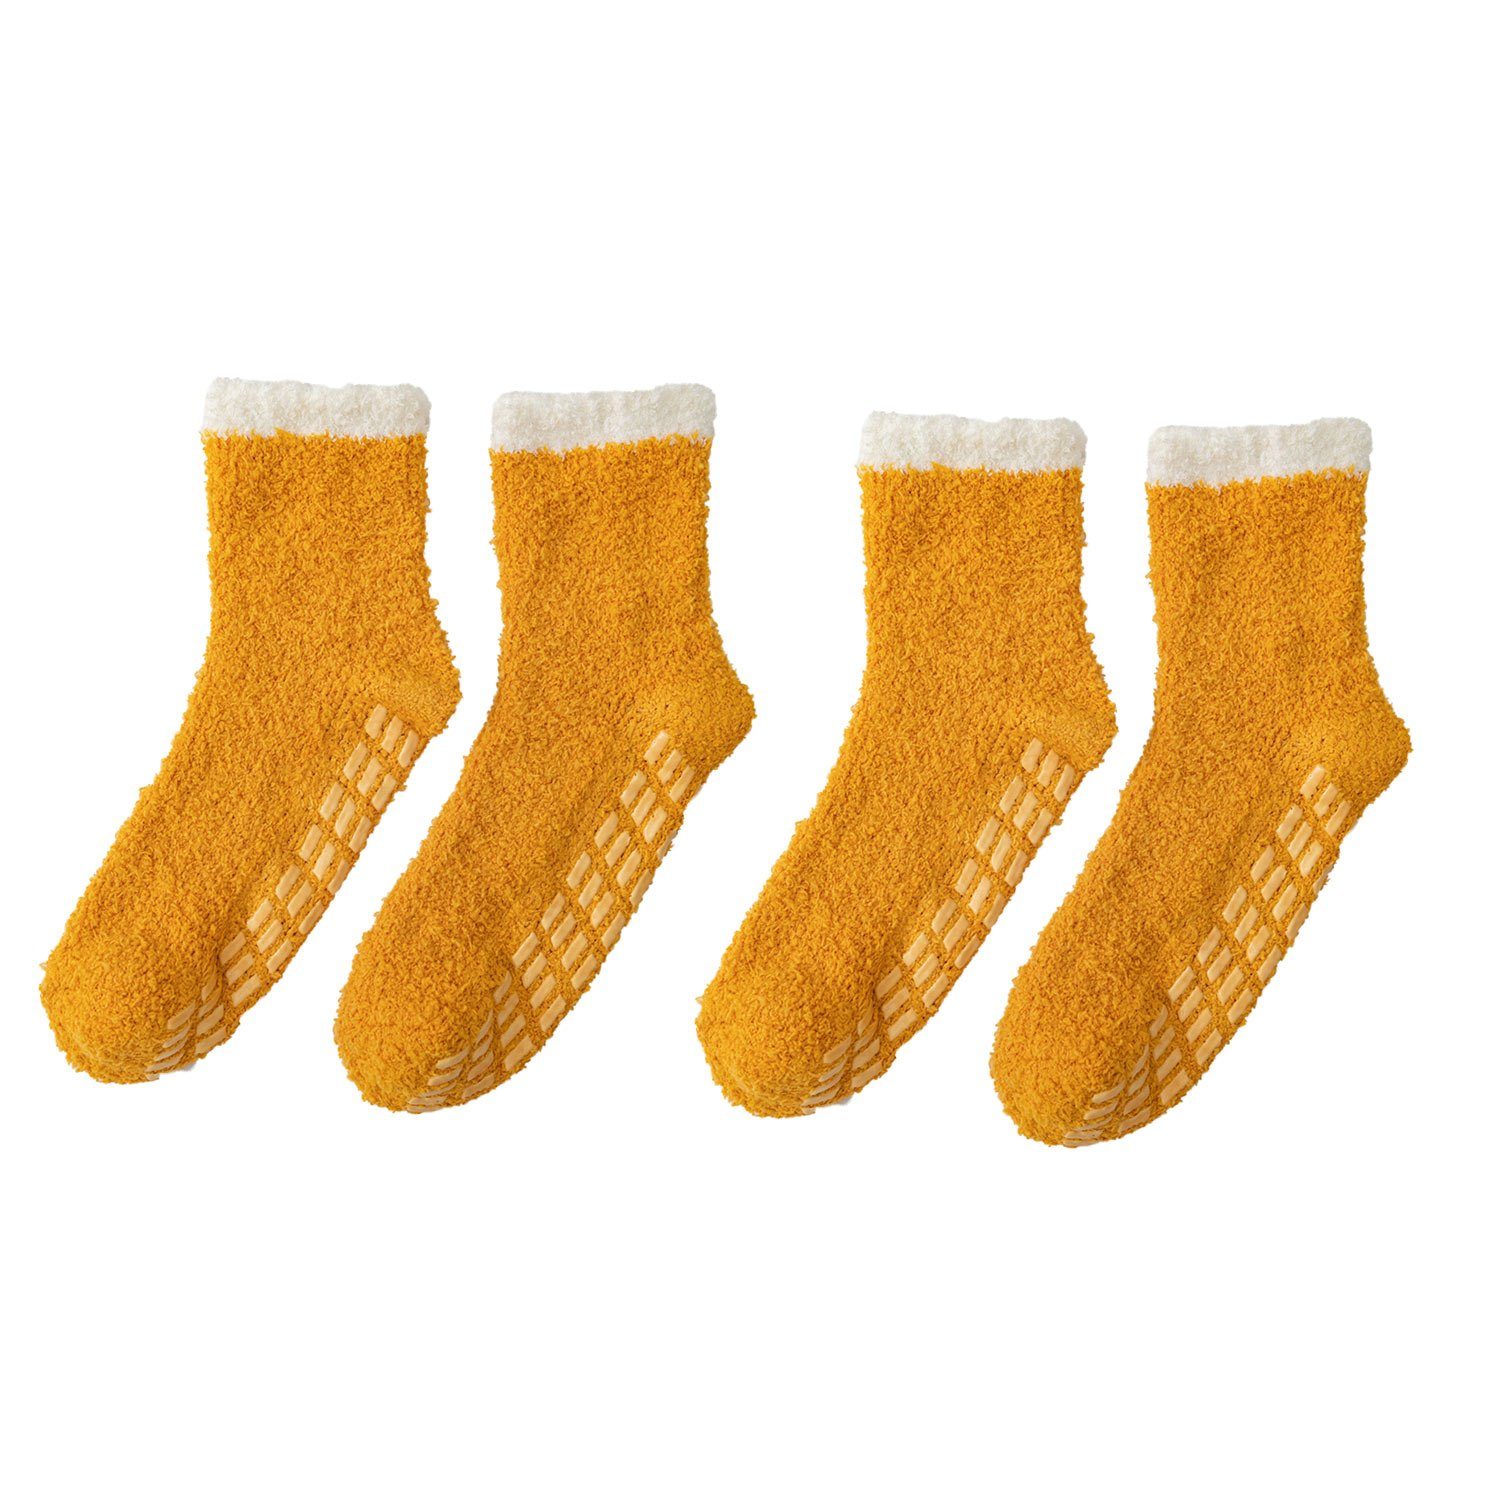 MAGICSHE Langsocken 2 Paare für Winter weiche flauschige Socken Rutschfeste und warme Fleece Socken orange